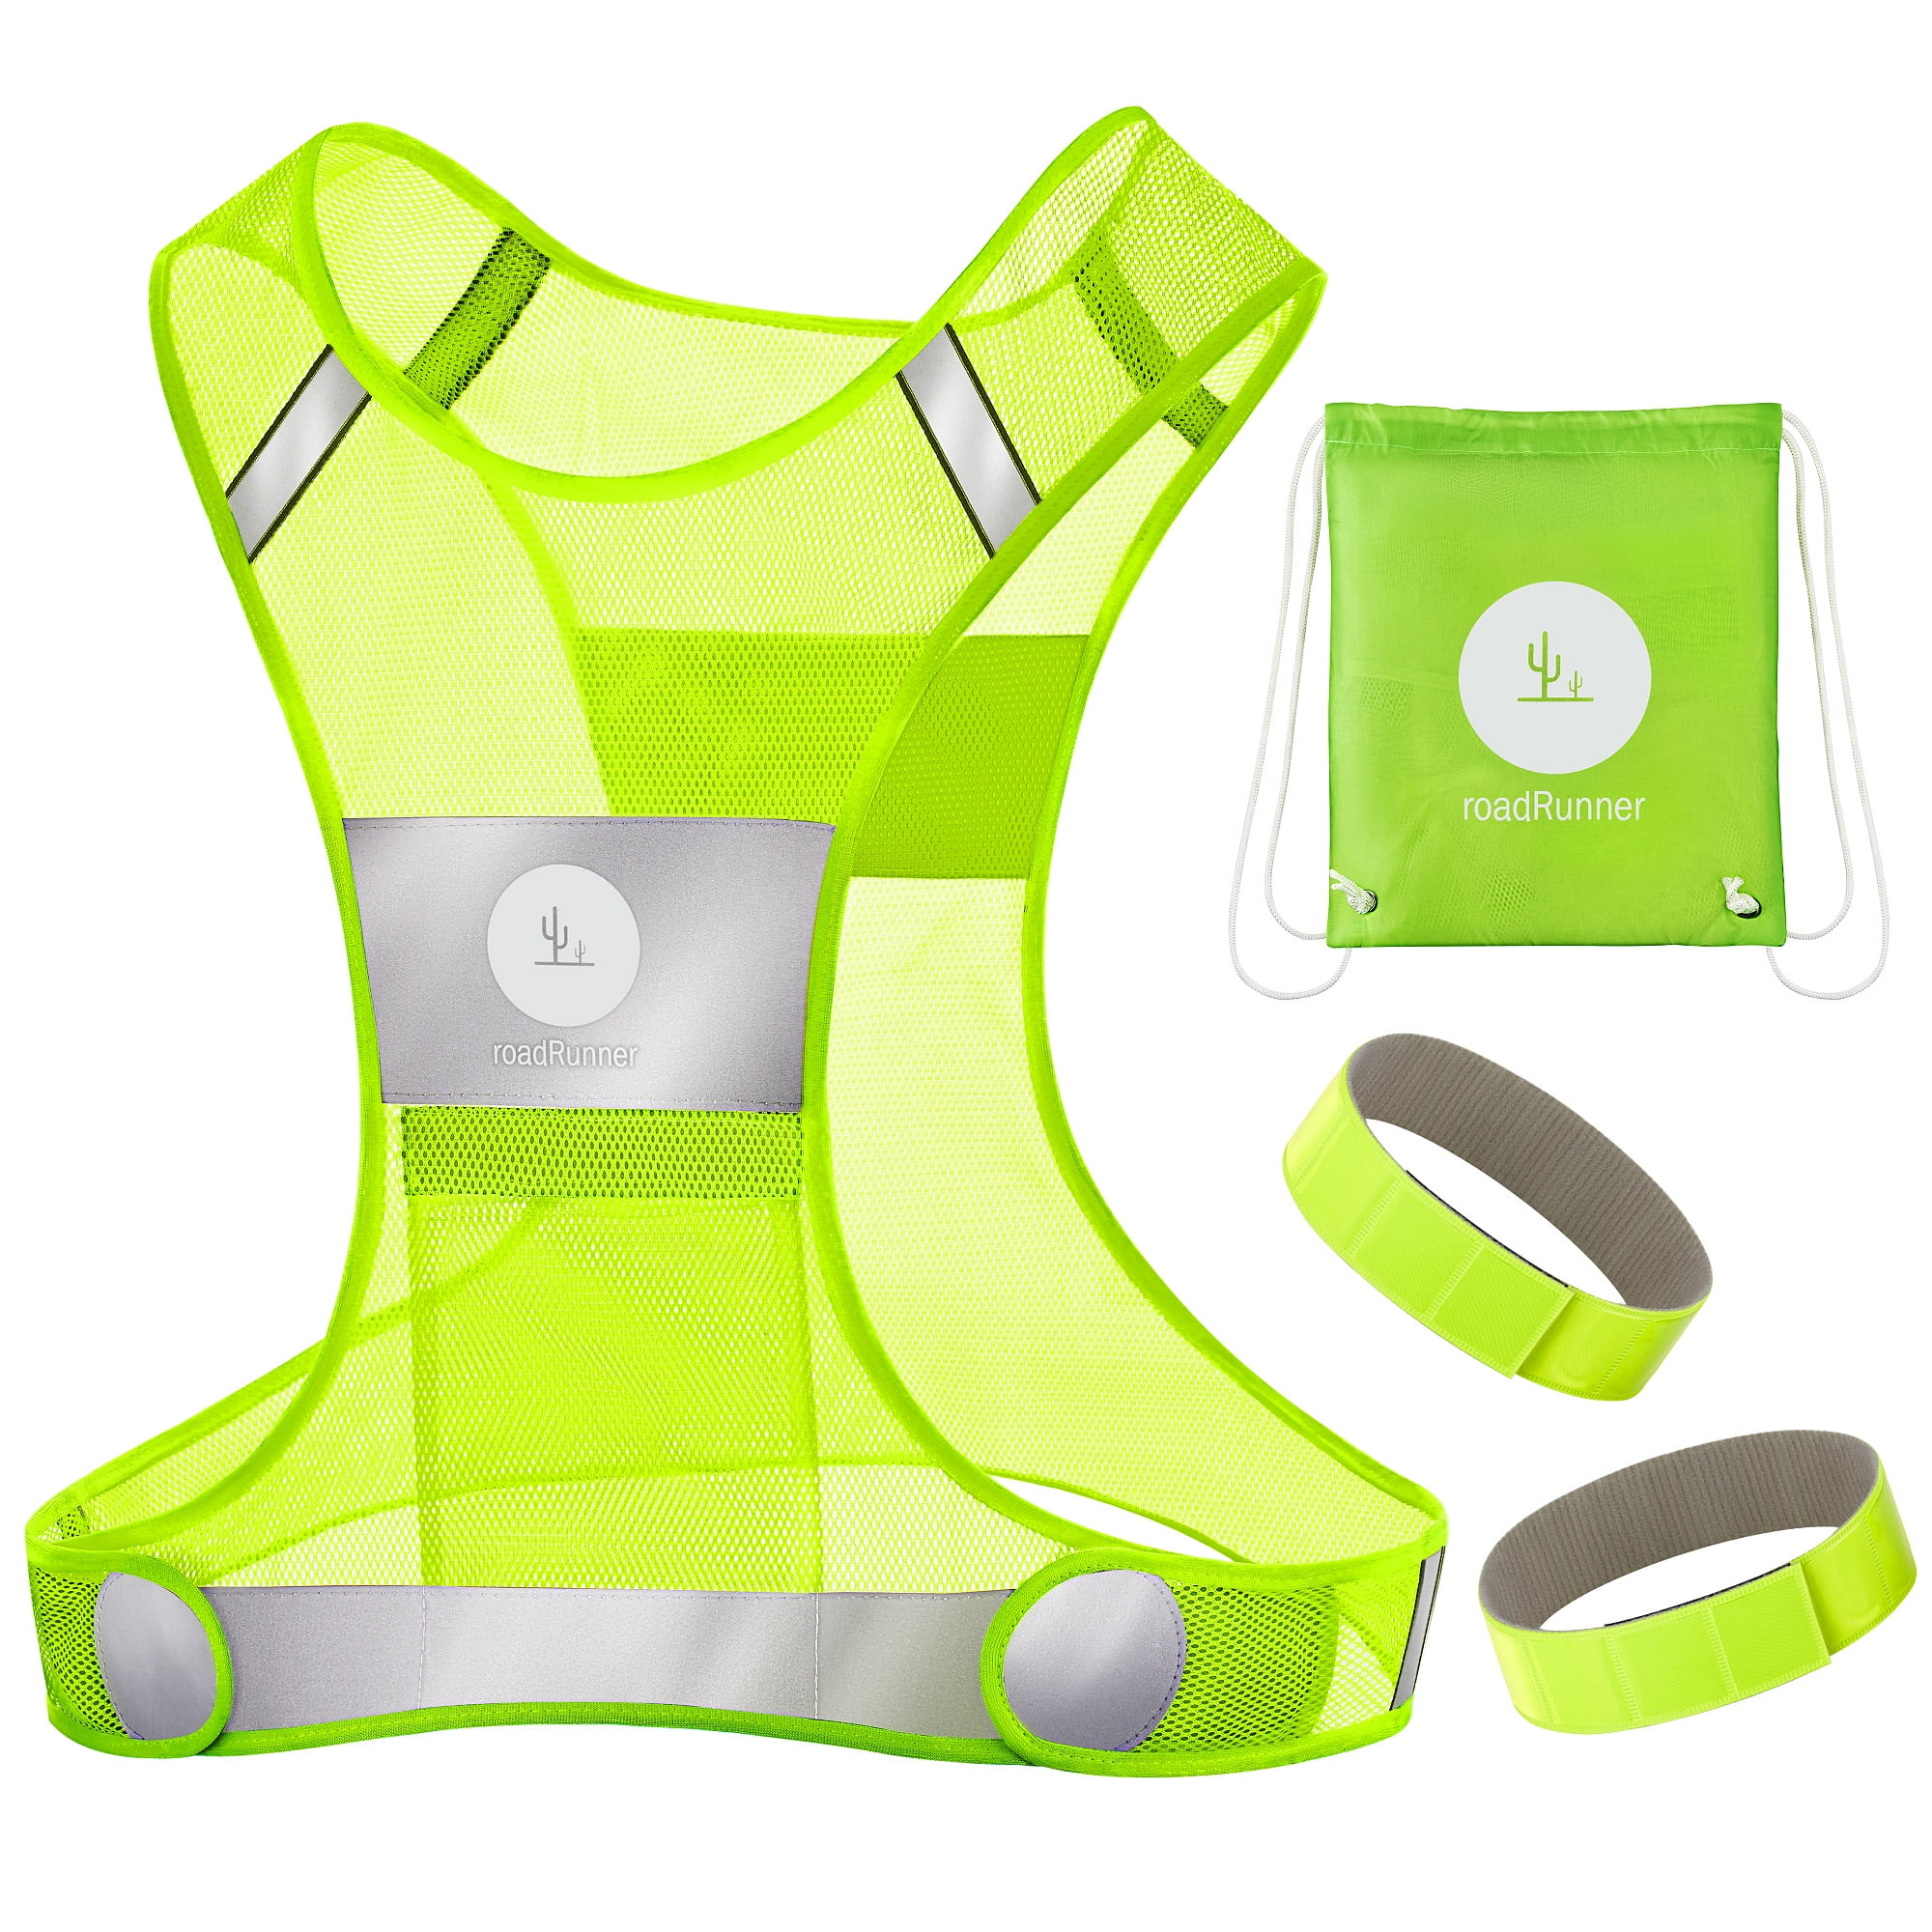 Bag High Visibility Safety Vest Reflective Vest Running Gear Reflector Bands 